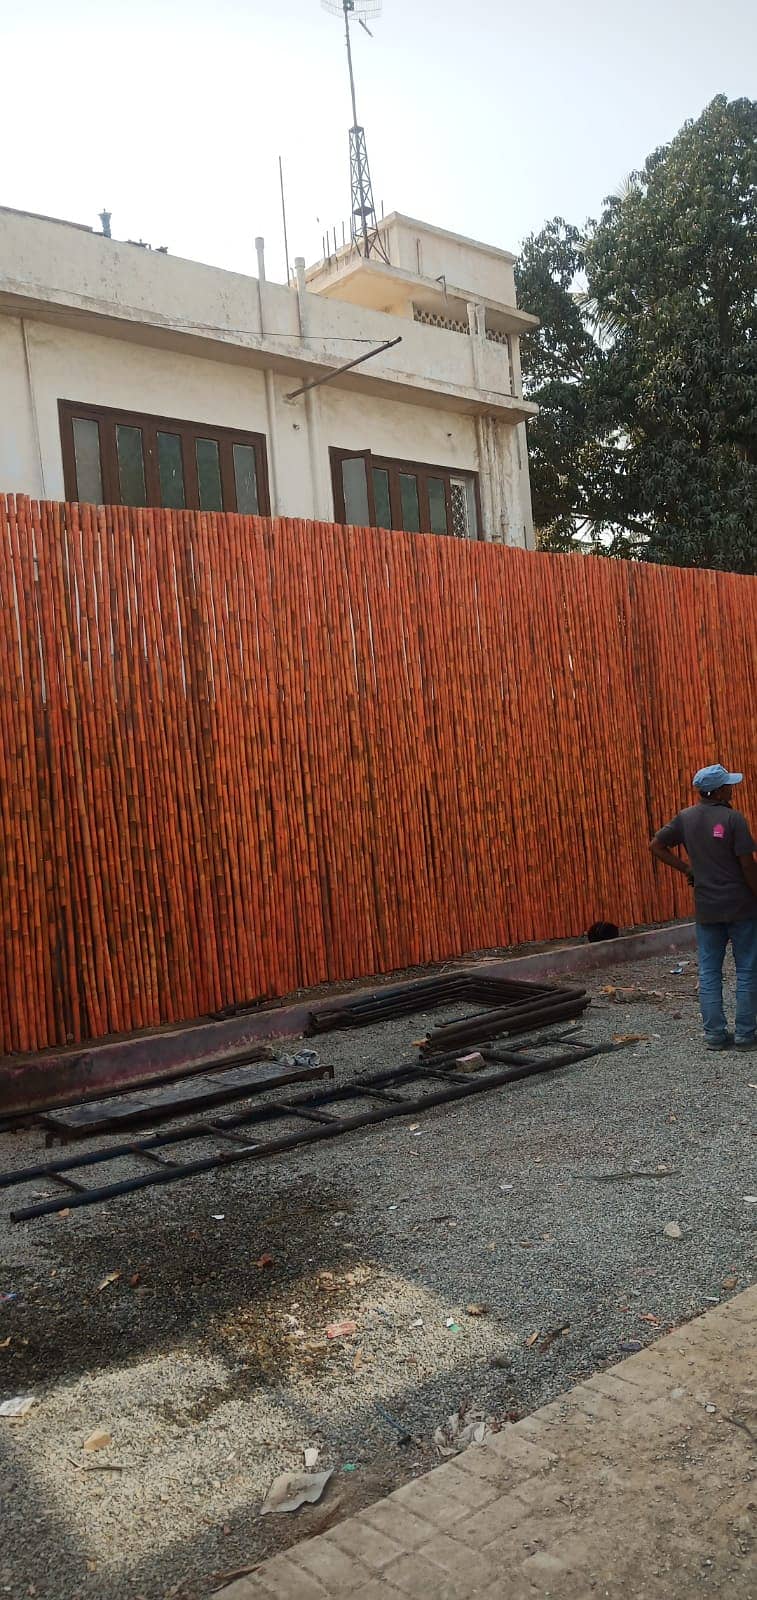 bamboo Shade Jaffri Wall Works Best Baans Work Bamboo Pent House 14